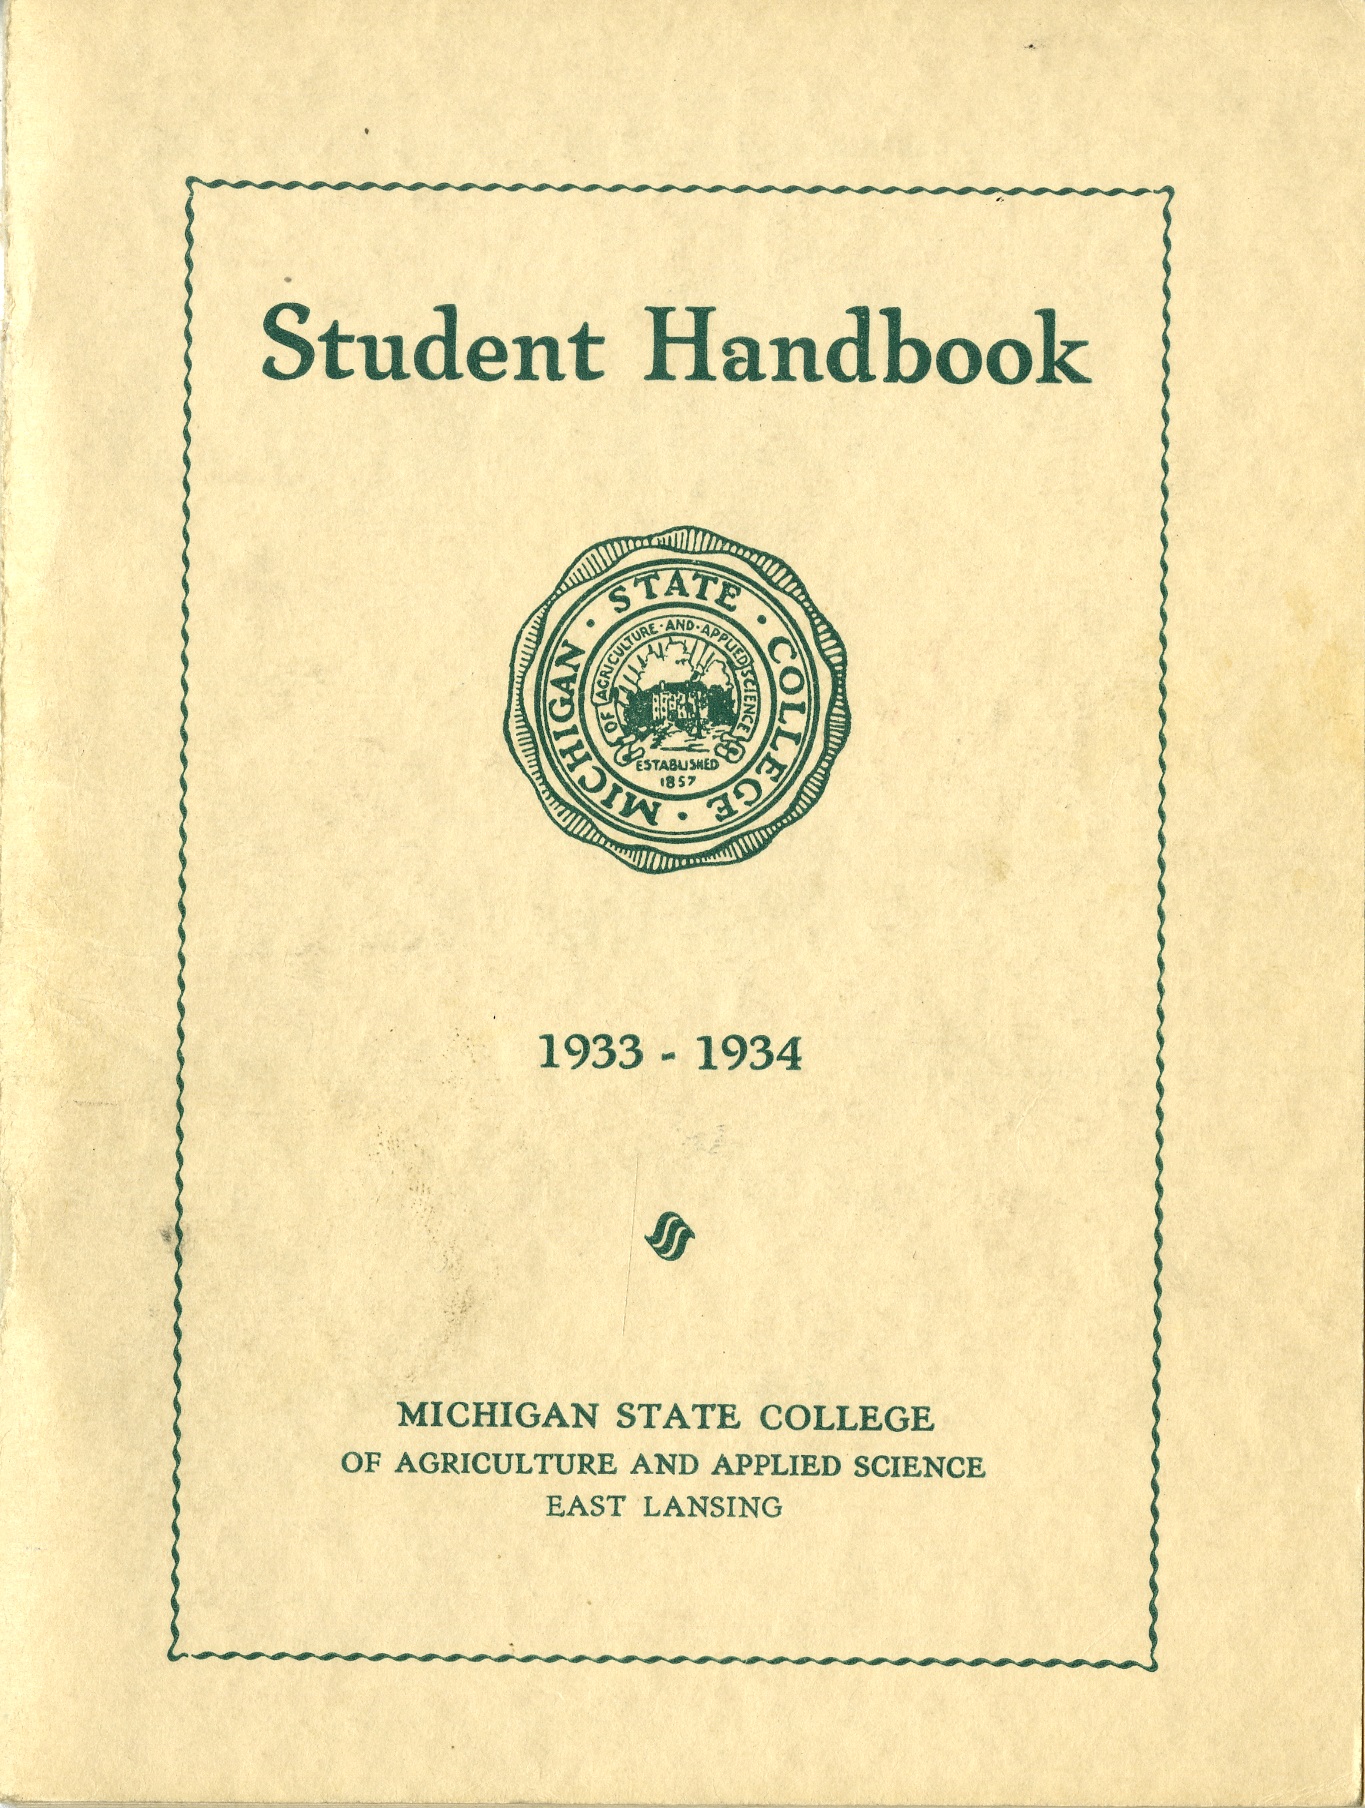 Student Handbook, 1933-1934